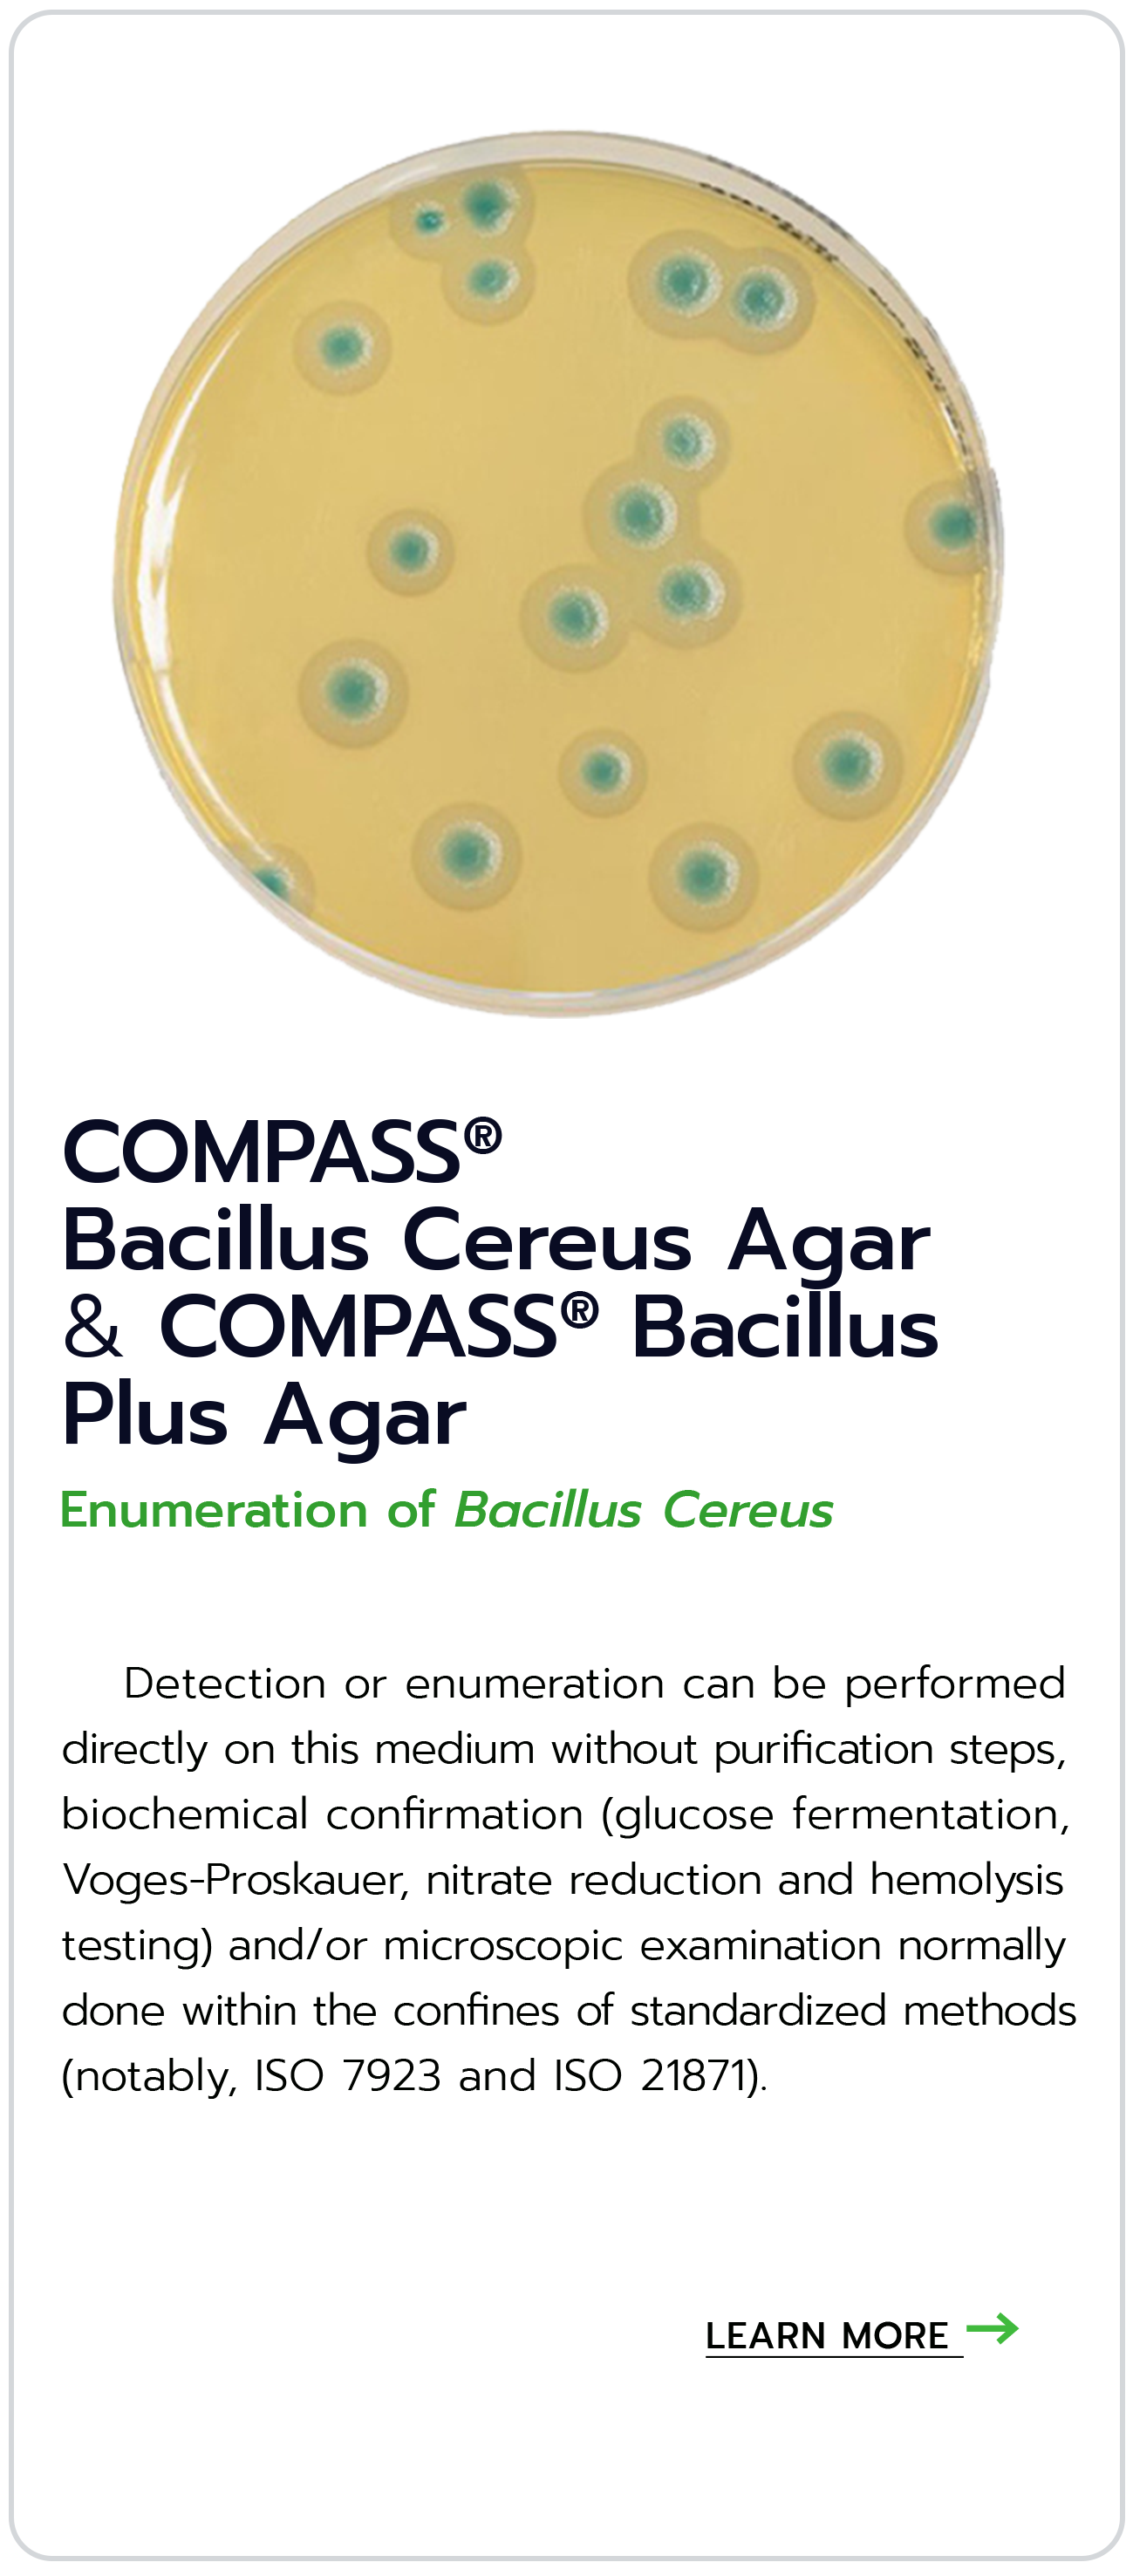 COMPASS® Bacillus Cereus Agar & COMPASS® Bacillus Plus Agar Enumeration of Bacillus Cereus biokar